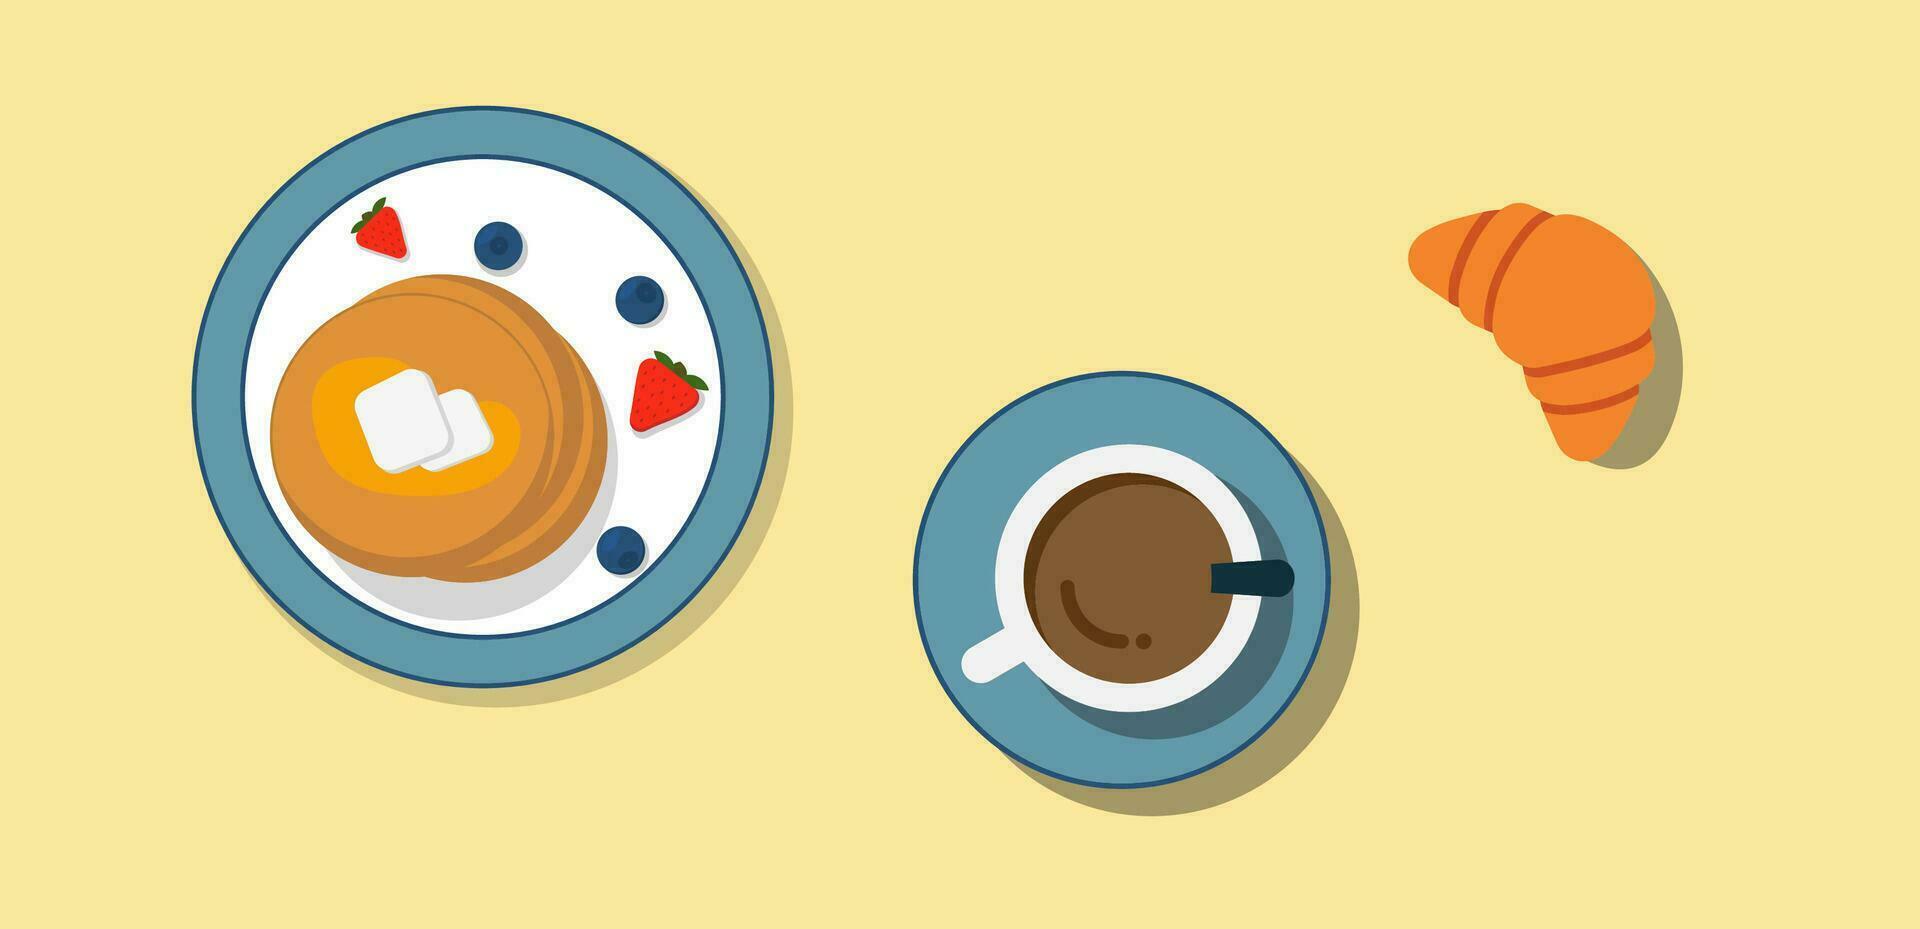 pannkakor med bär på tallrik, croissant och kopp av te topp se. traditionell frukost symbol. frukost i paris. morgon- humör. platt stil med skuggor. vektor